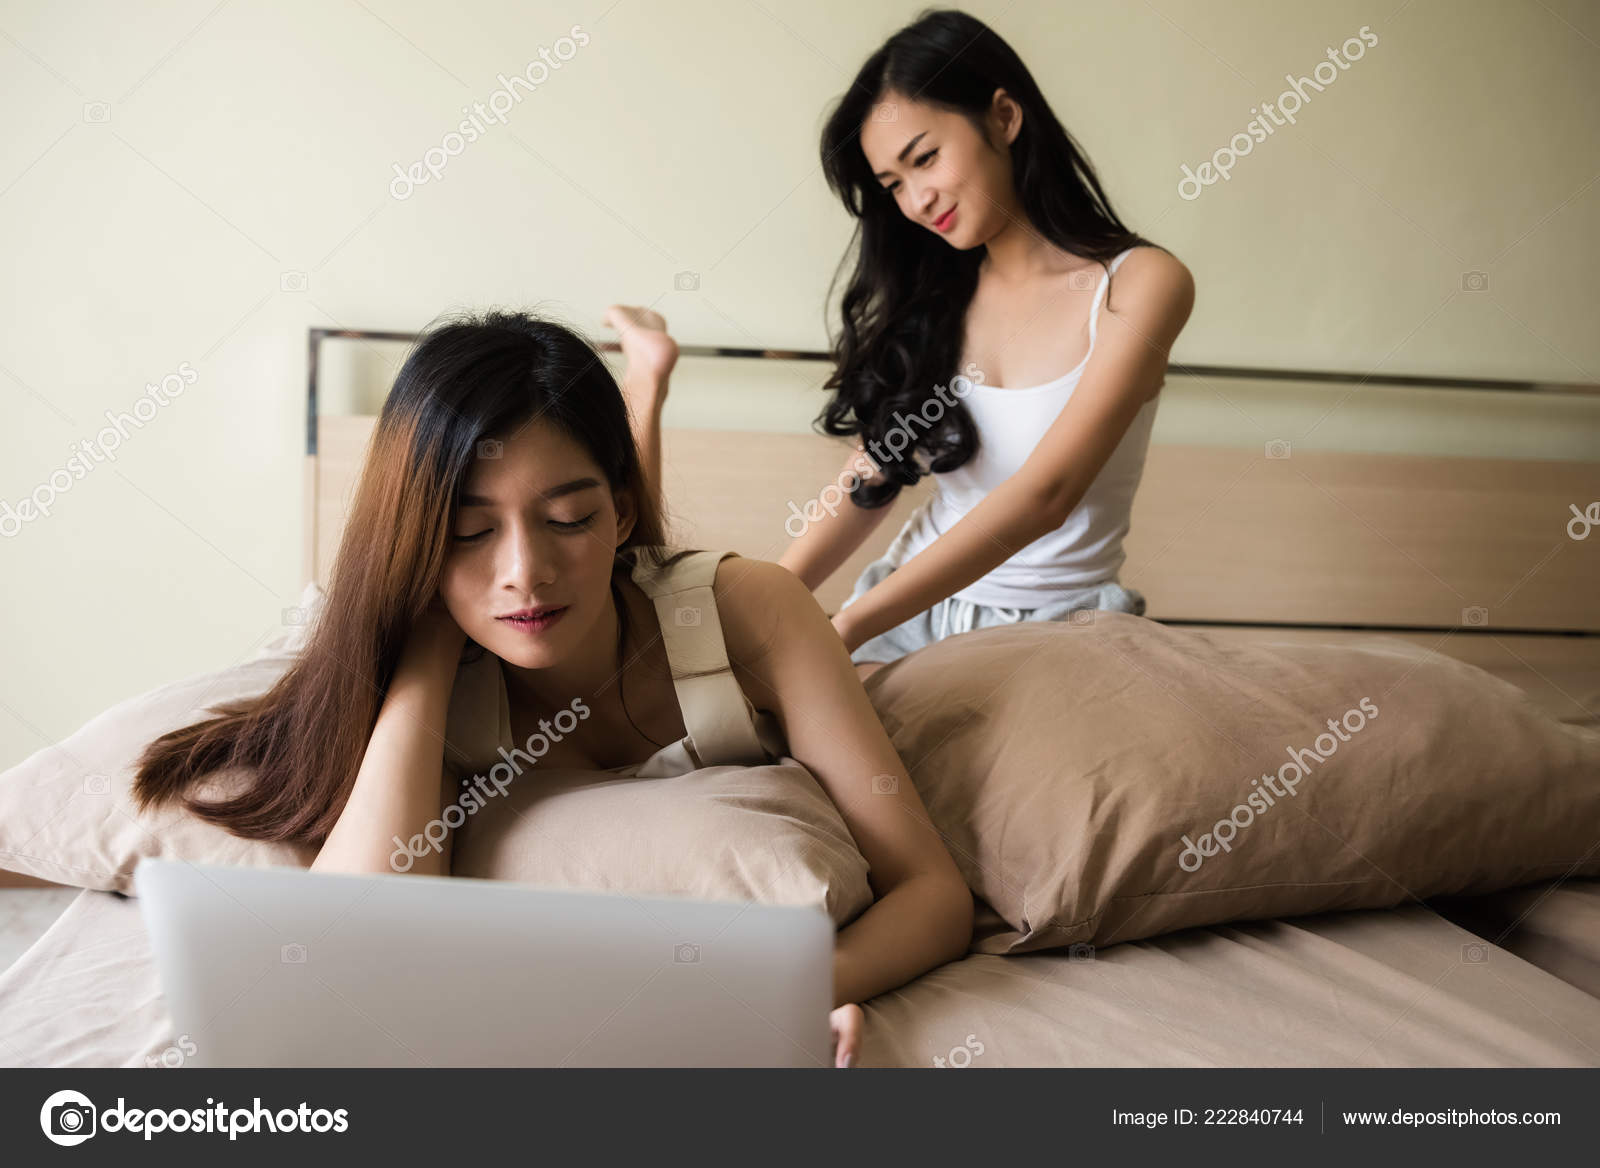 Hot Black Lesbian Sex Massage - Black Girl Lesbian Massage - Best Sex Photos, Hot Porn ...